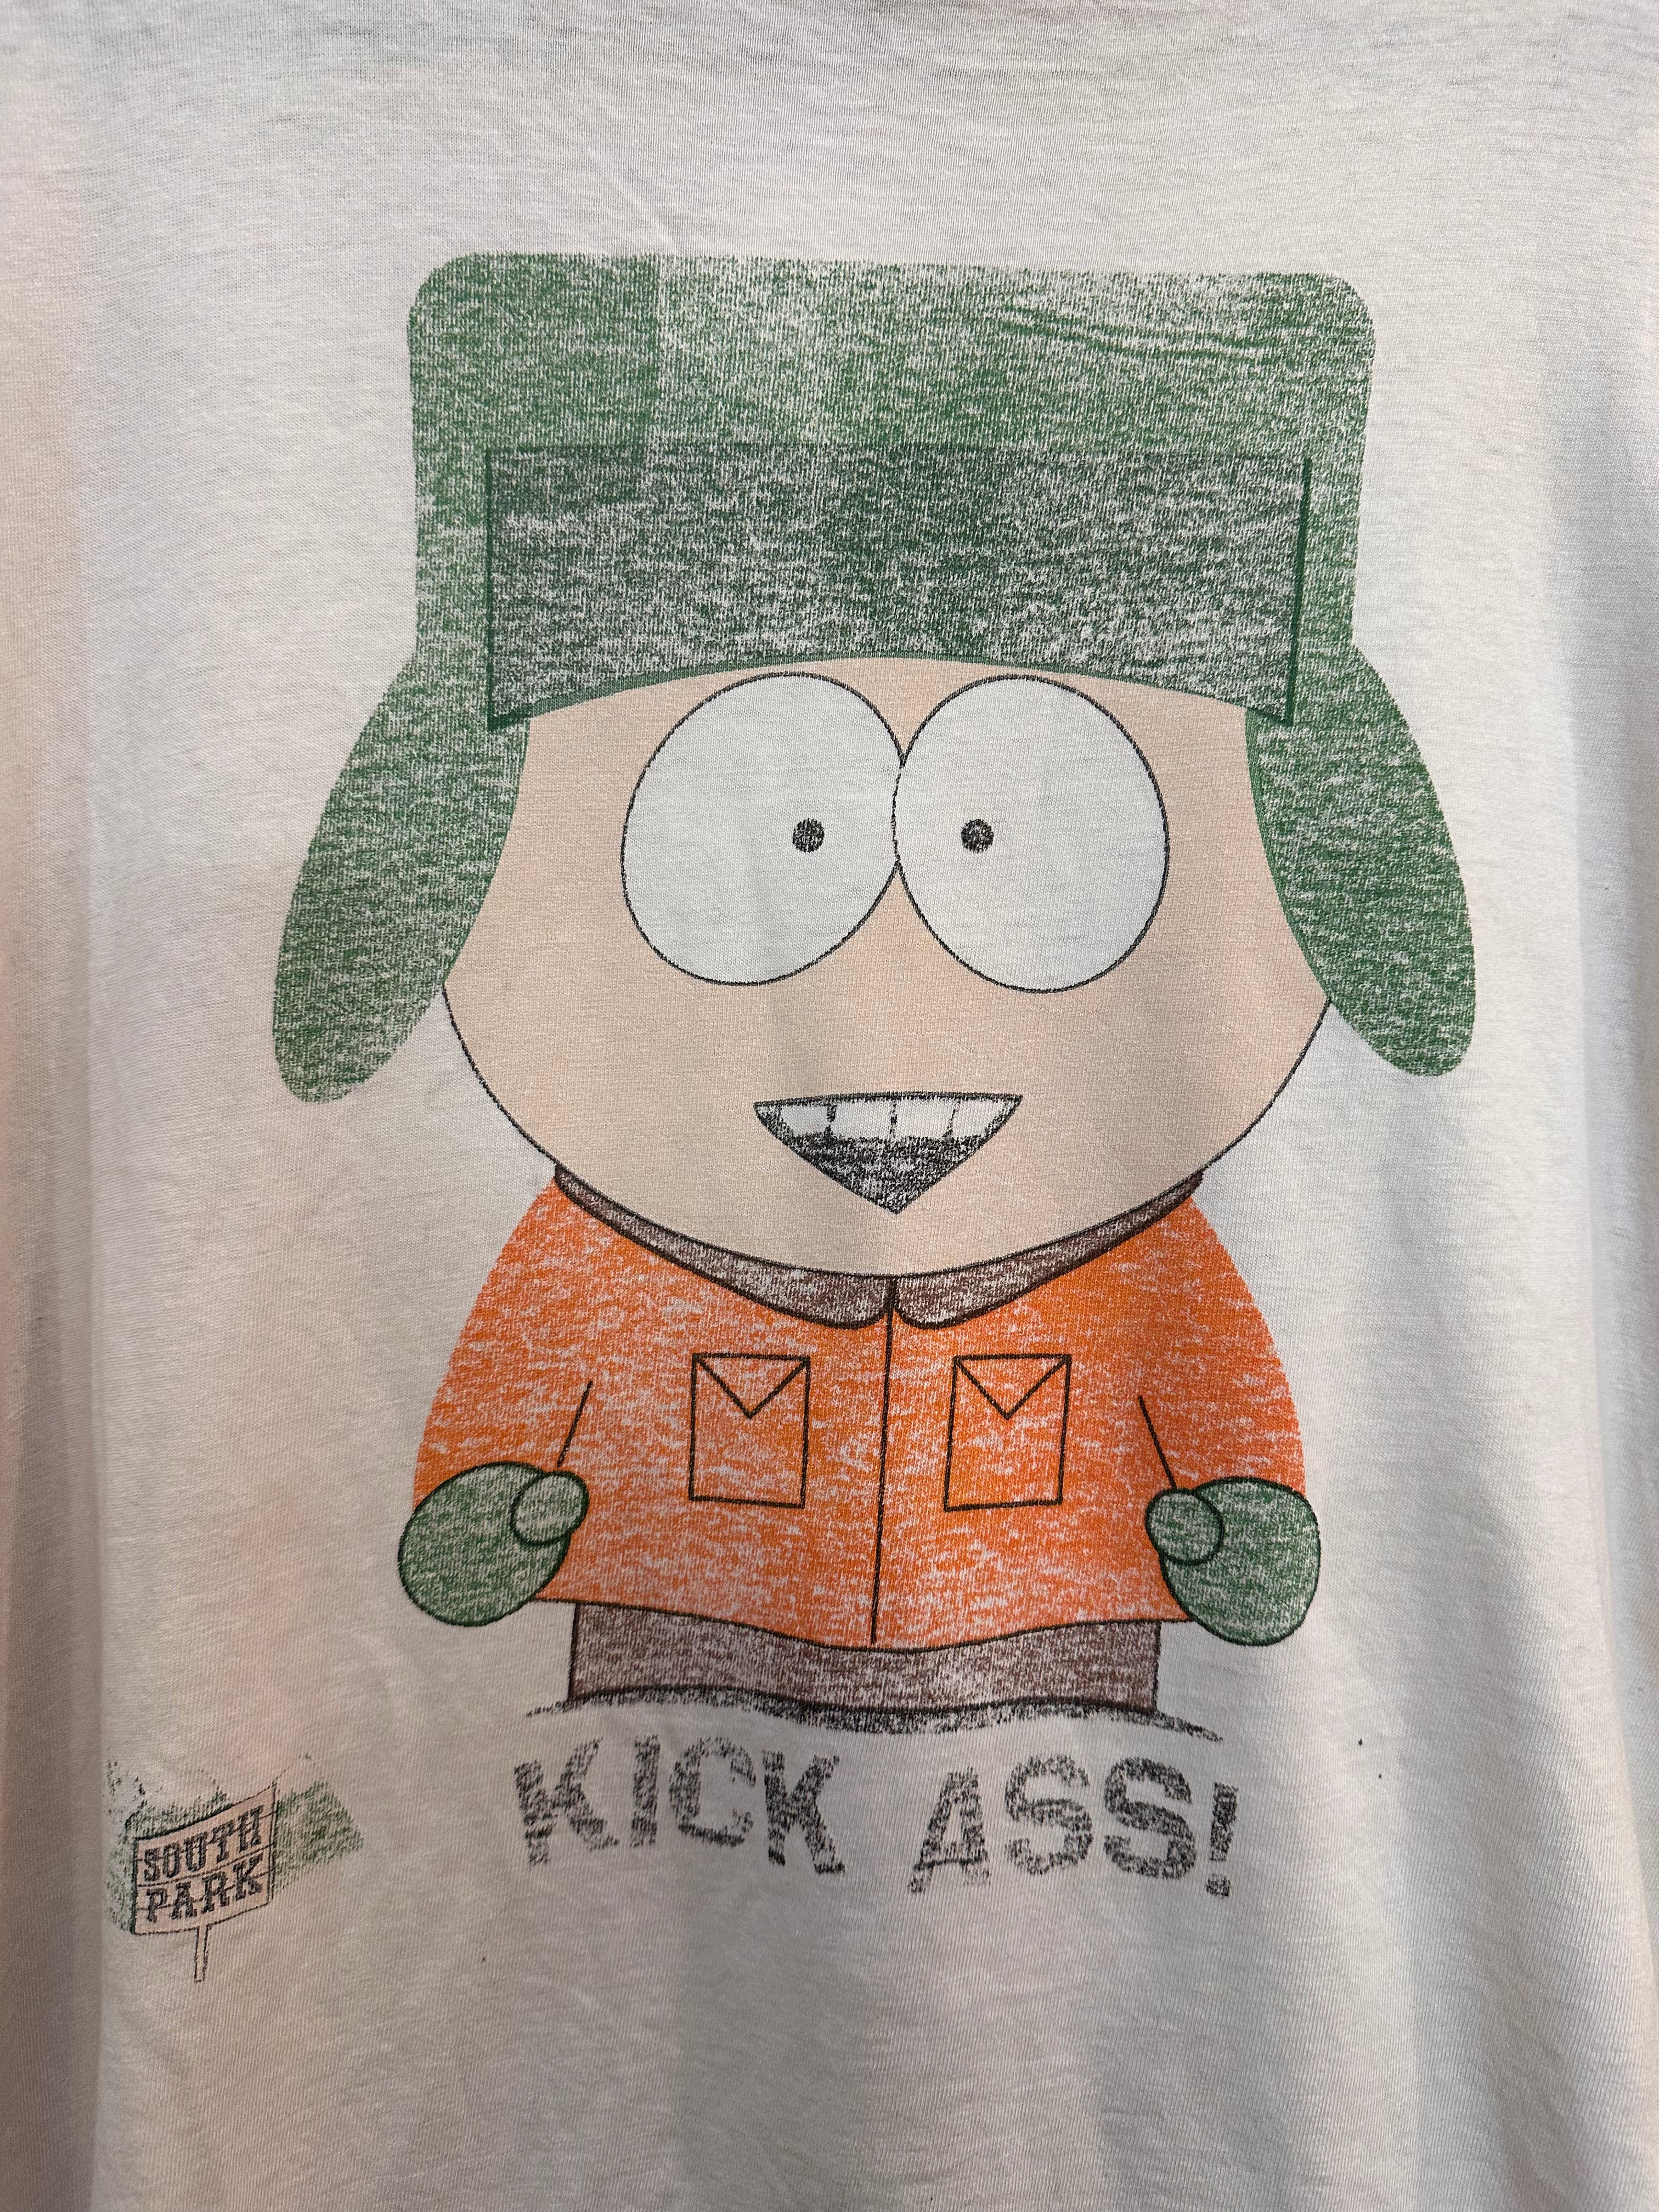 South Park Kick Ass Tee